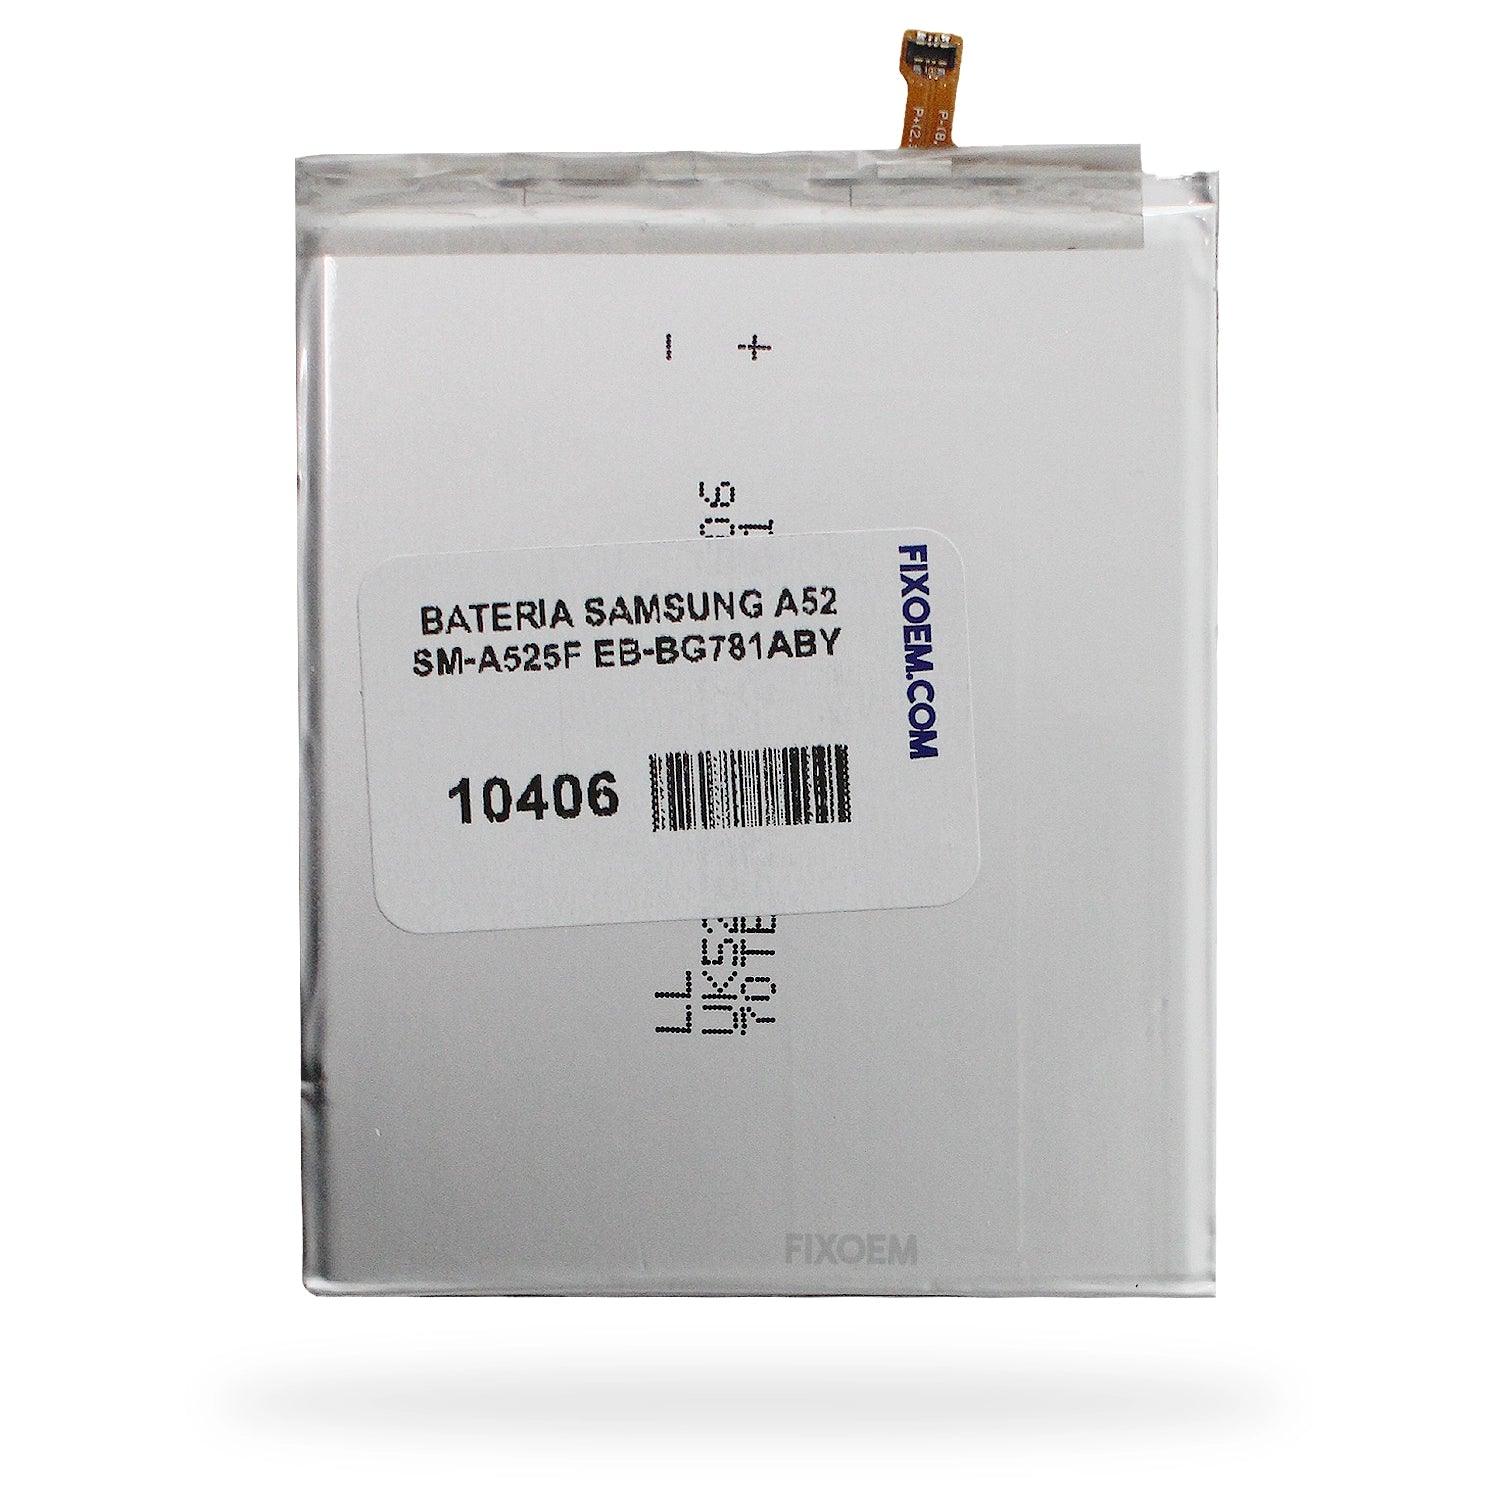 Bateria Samsung A52 Sm-A525F EB-BG781ABY a solo $ 120.00 Refaccion y puestos celulares, refurbish y microelectronica.- FixOEM